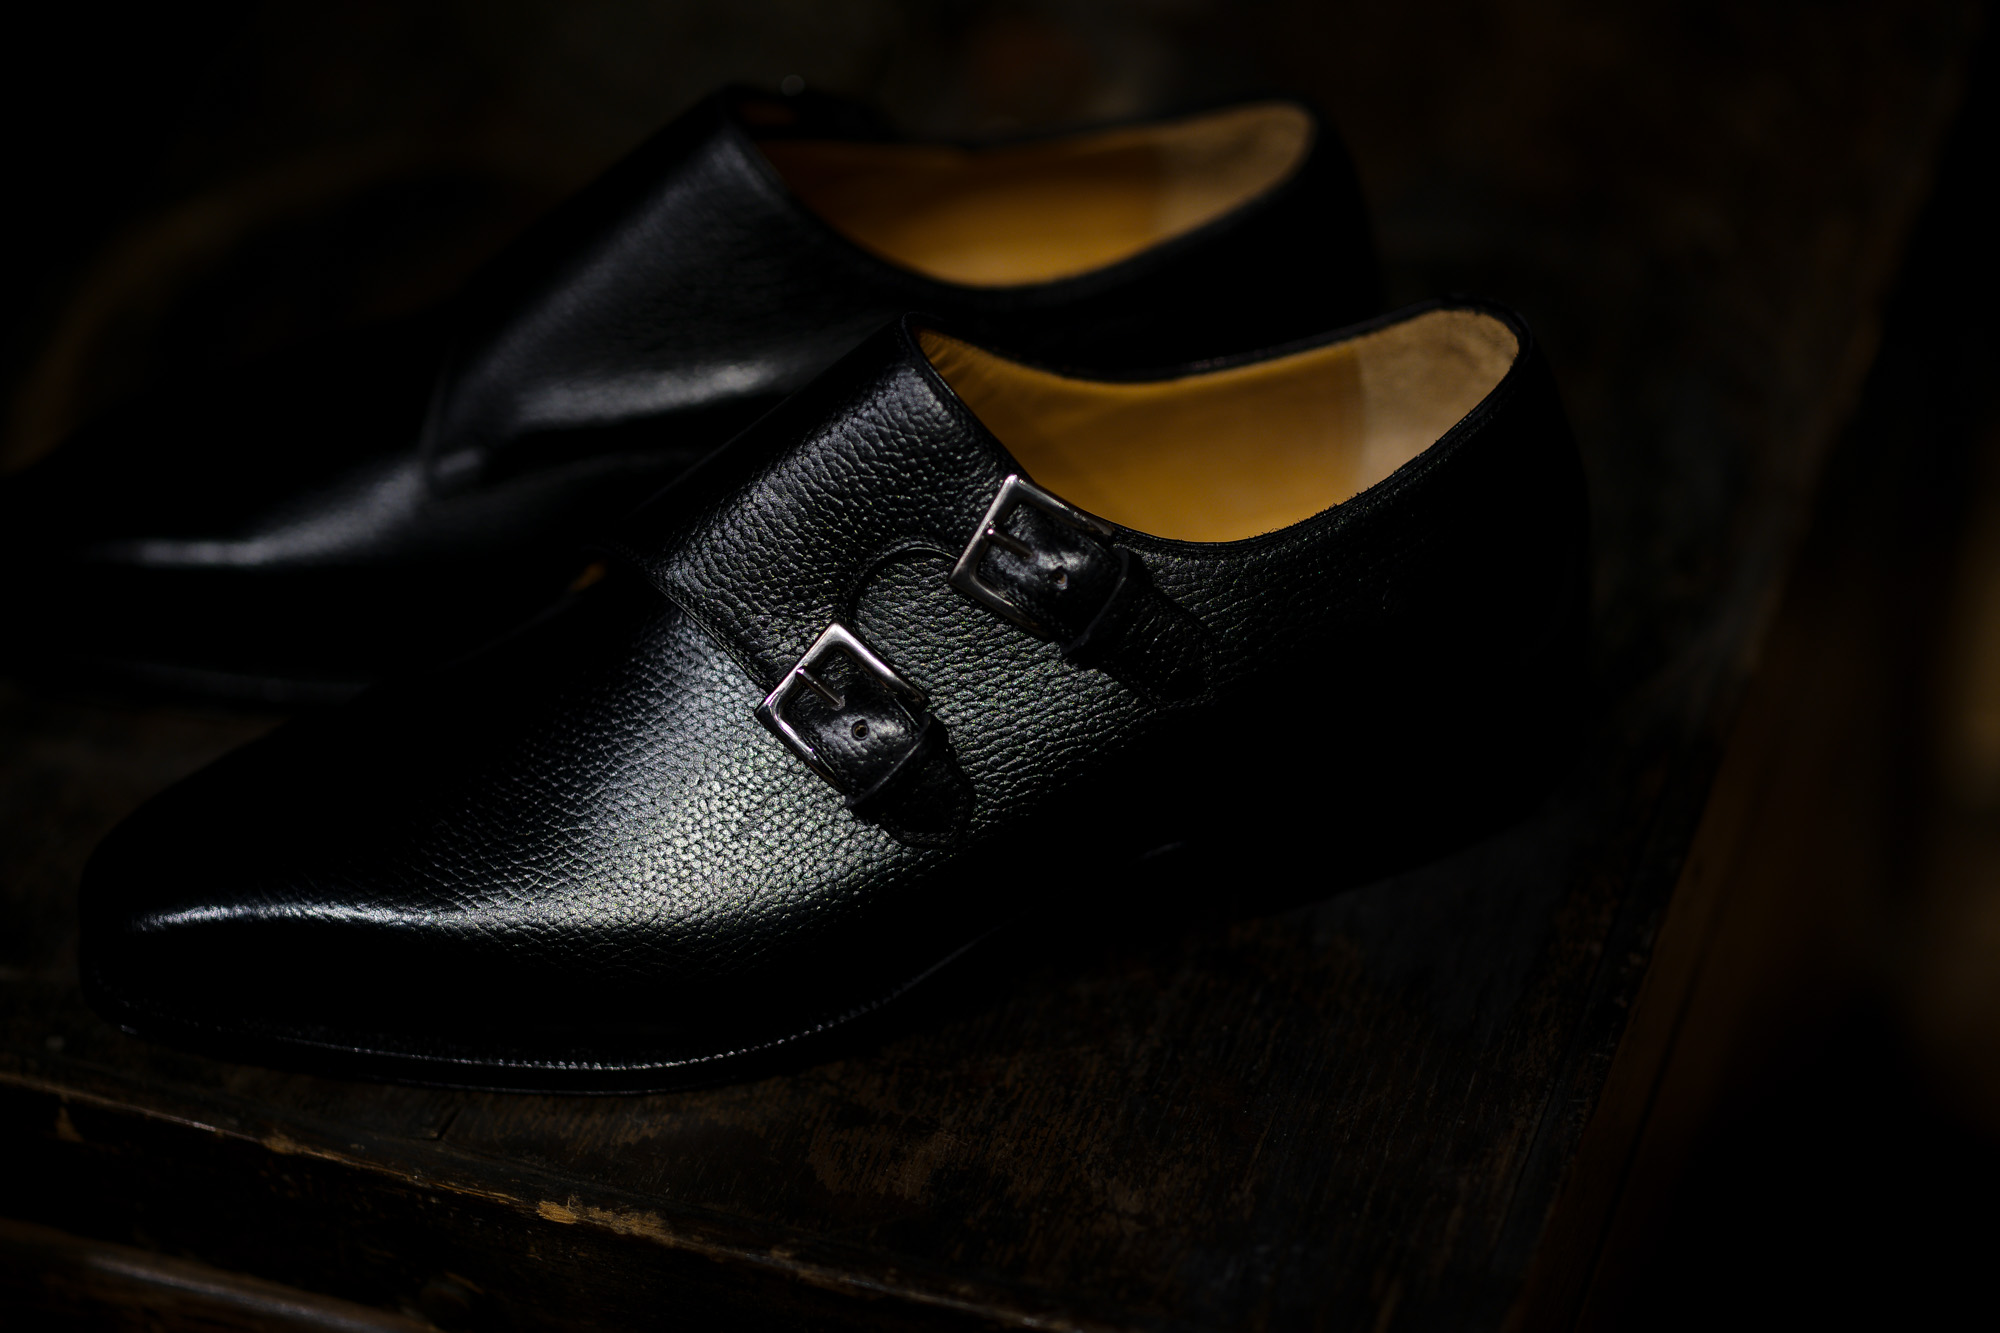 ENZO BONAFE(エンツォボナフェ) EB-36 Double Monk Strap Shoes INCA Leather ダブルモンクストラップシューズ NERO (ブラック) made in italy (イタリア製) 2018 秋冬新作 【Special Model】 enzobonafe eb36 エンツォボナフェ altoediritto アルトエデリット